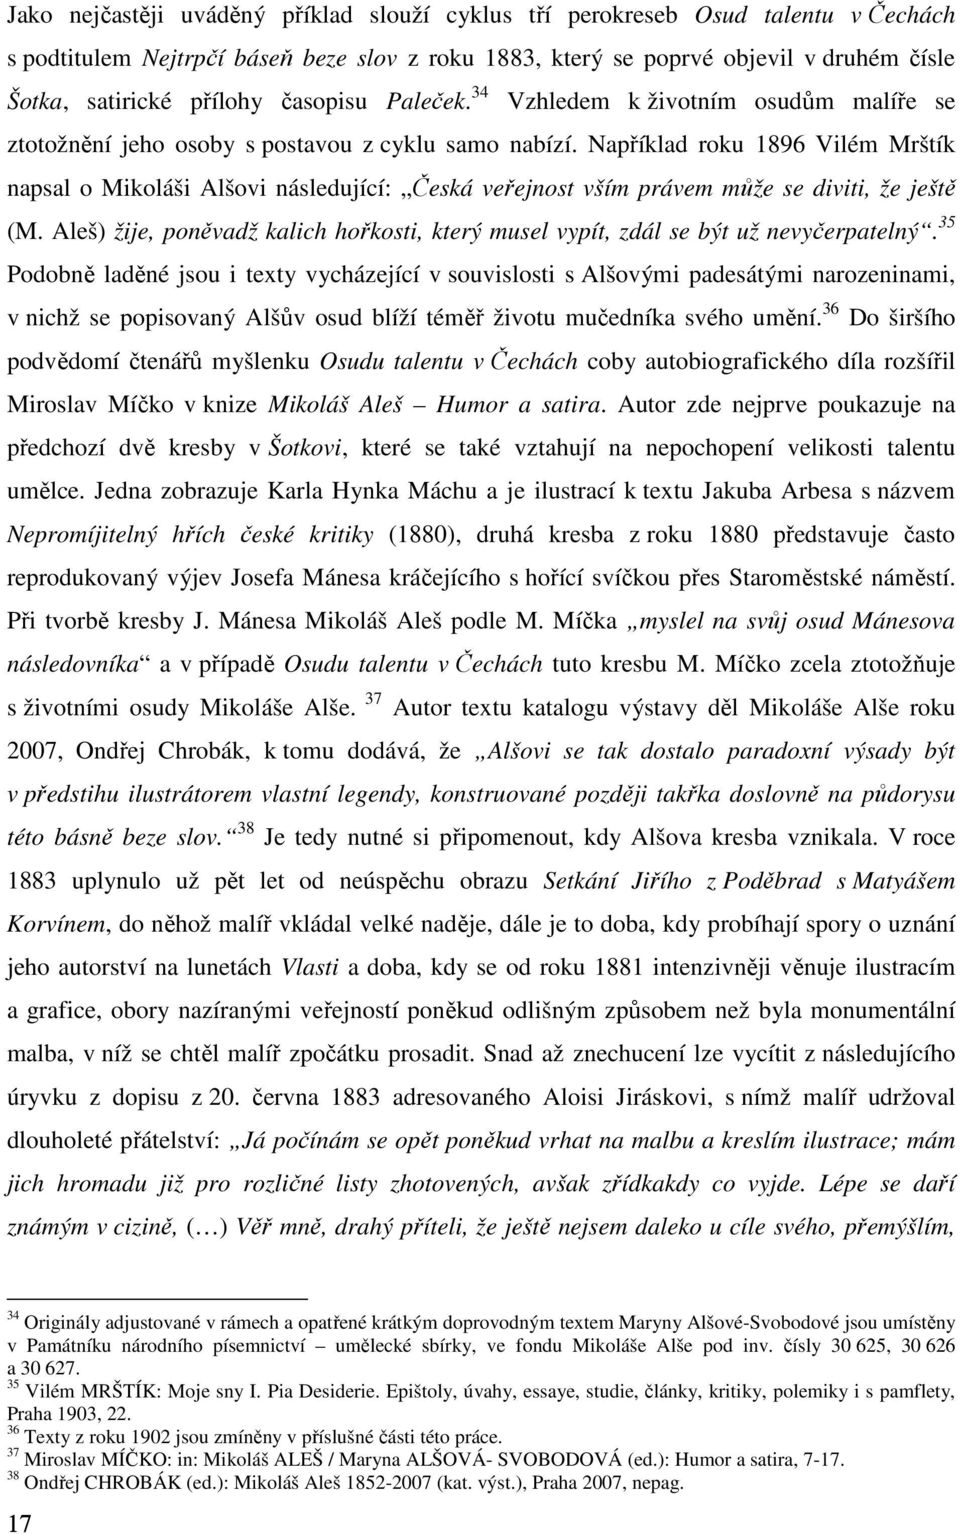 Například roku 1896 Vilém Mrštík napsal o Mikoláši Alšovi následující: Česká veřejnost vším právem může se diviti, že ještě (M.